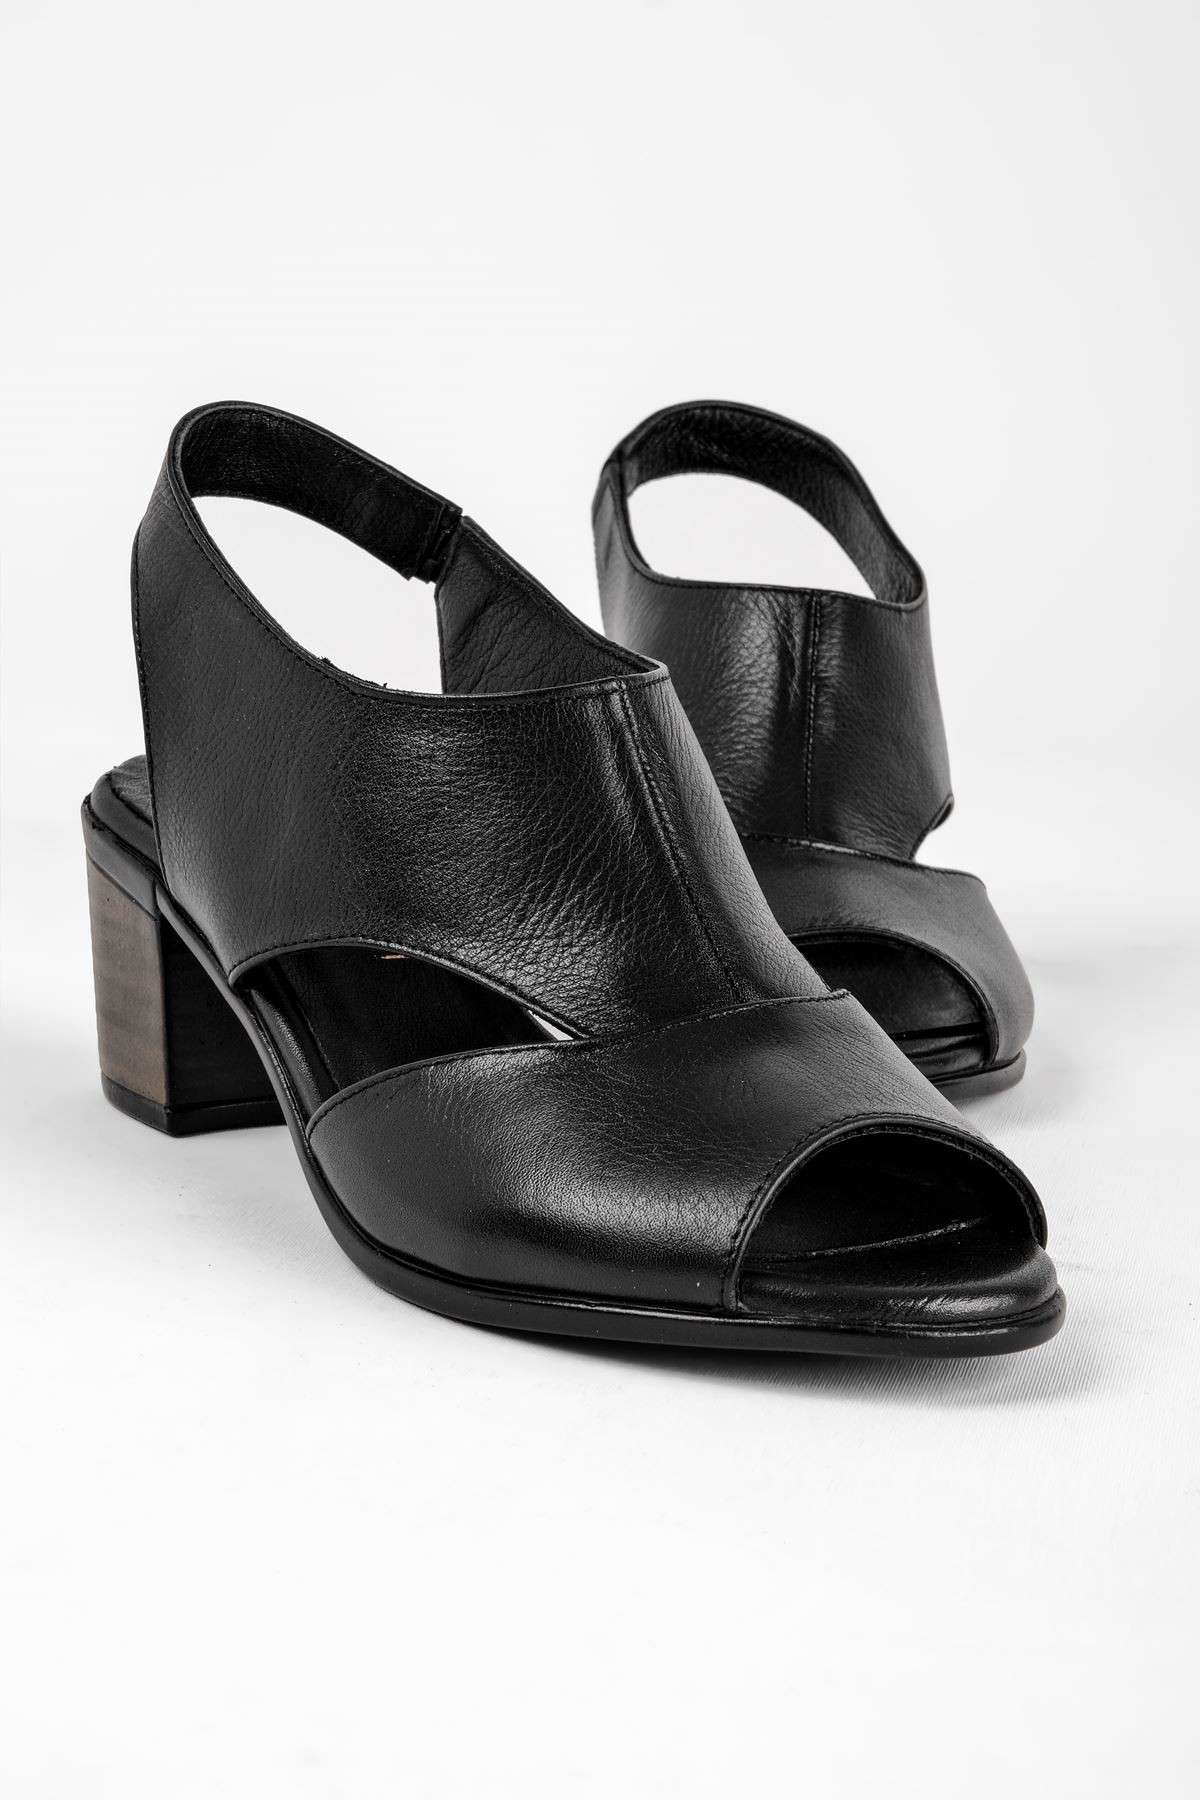 Breda Kadın Hakiki Deri Topuklu Ayakkabı (B2119 ) - Siyah